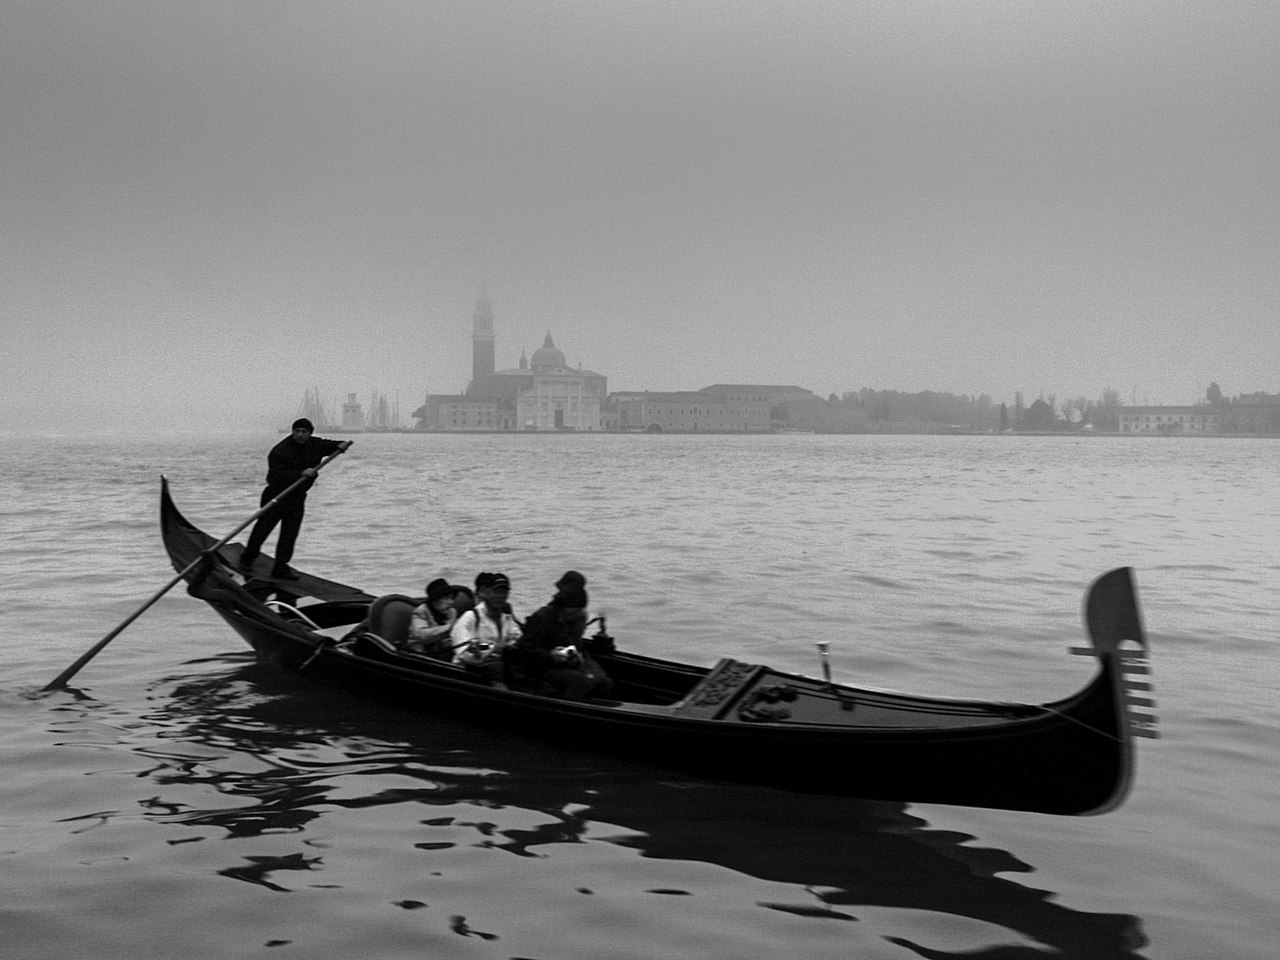 All Gondolas in Venice are black